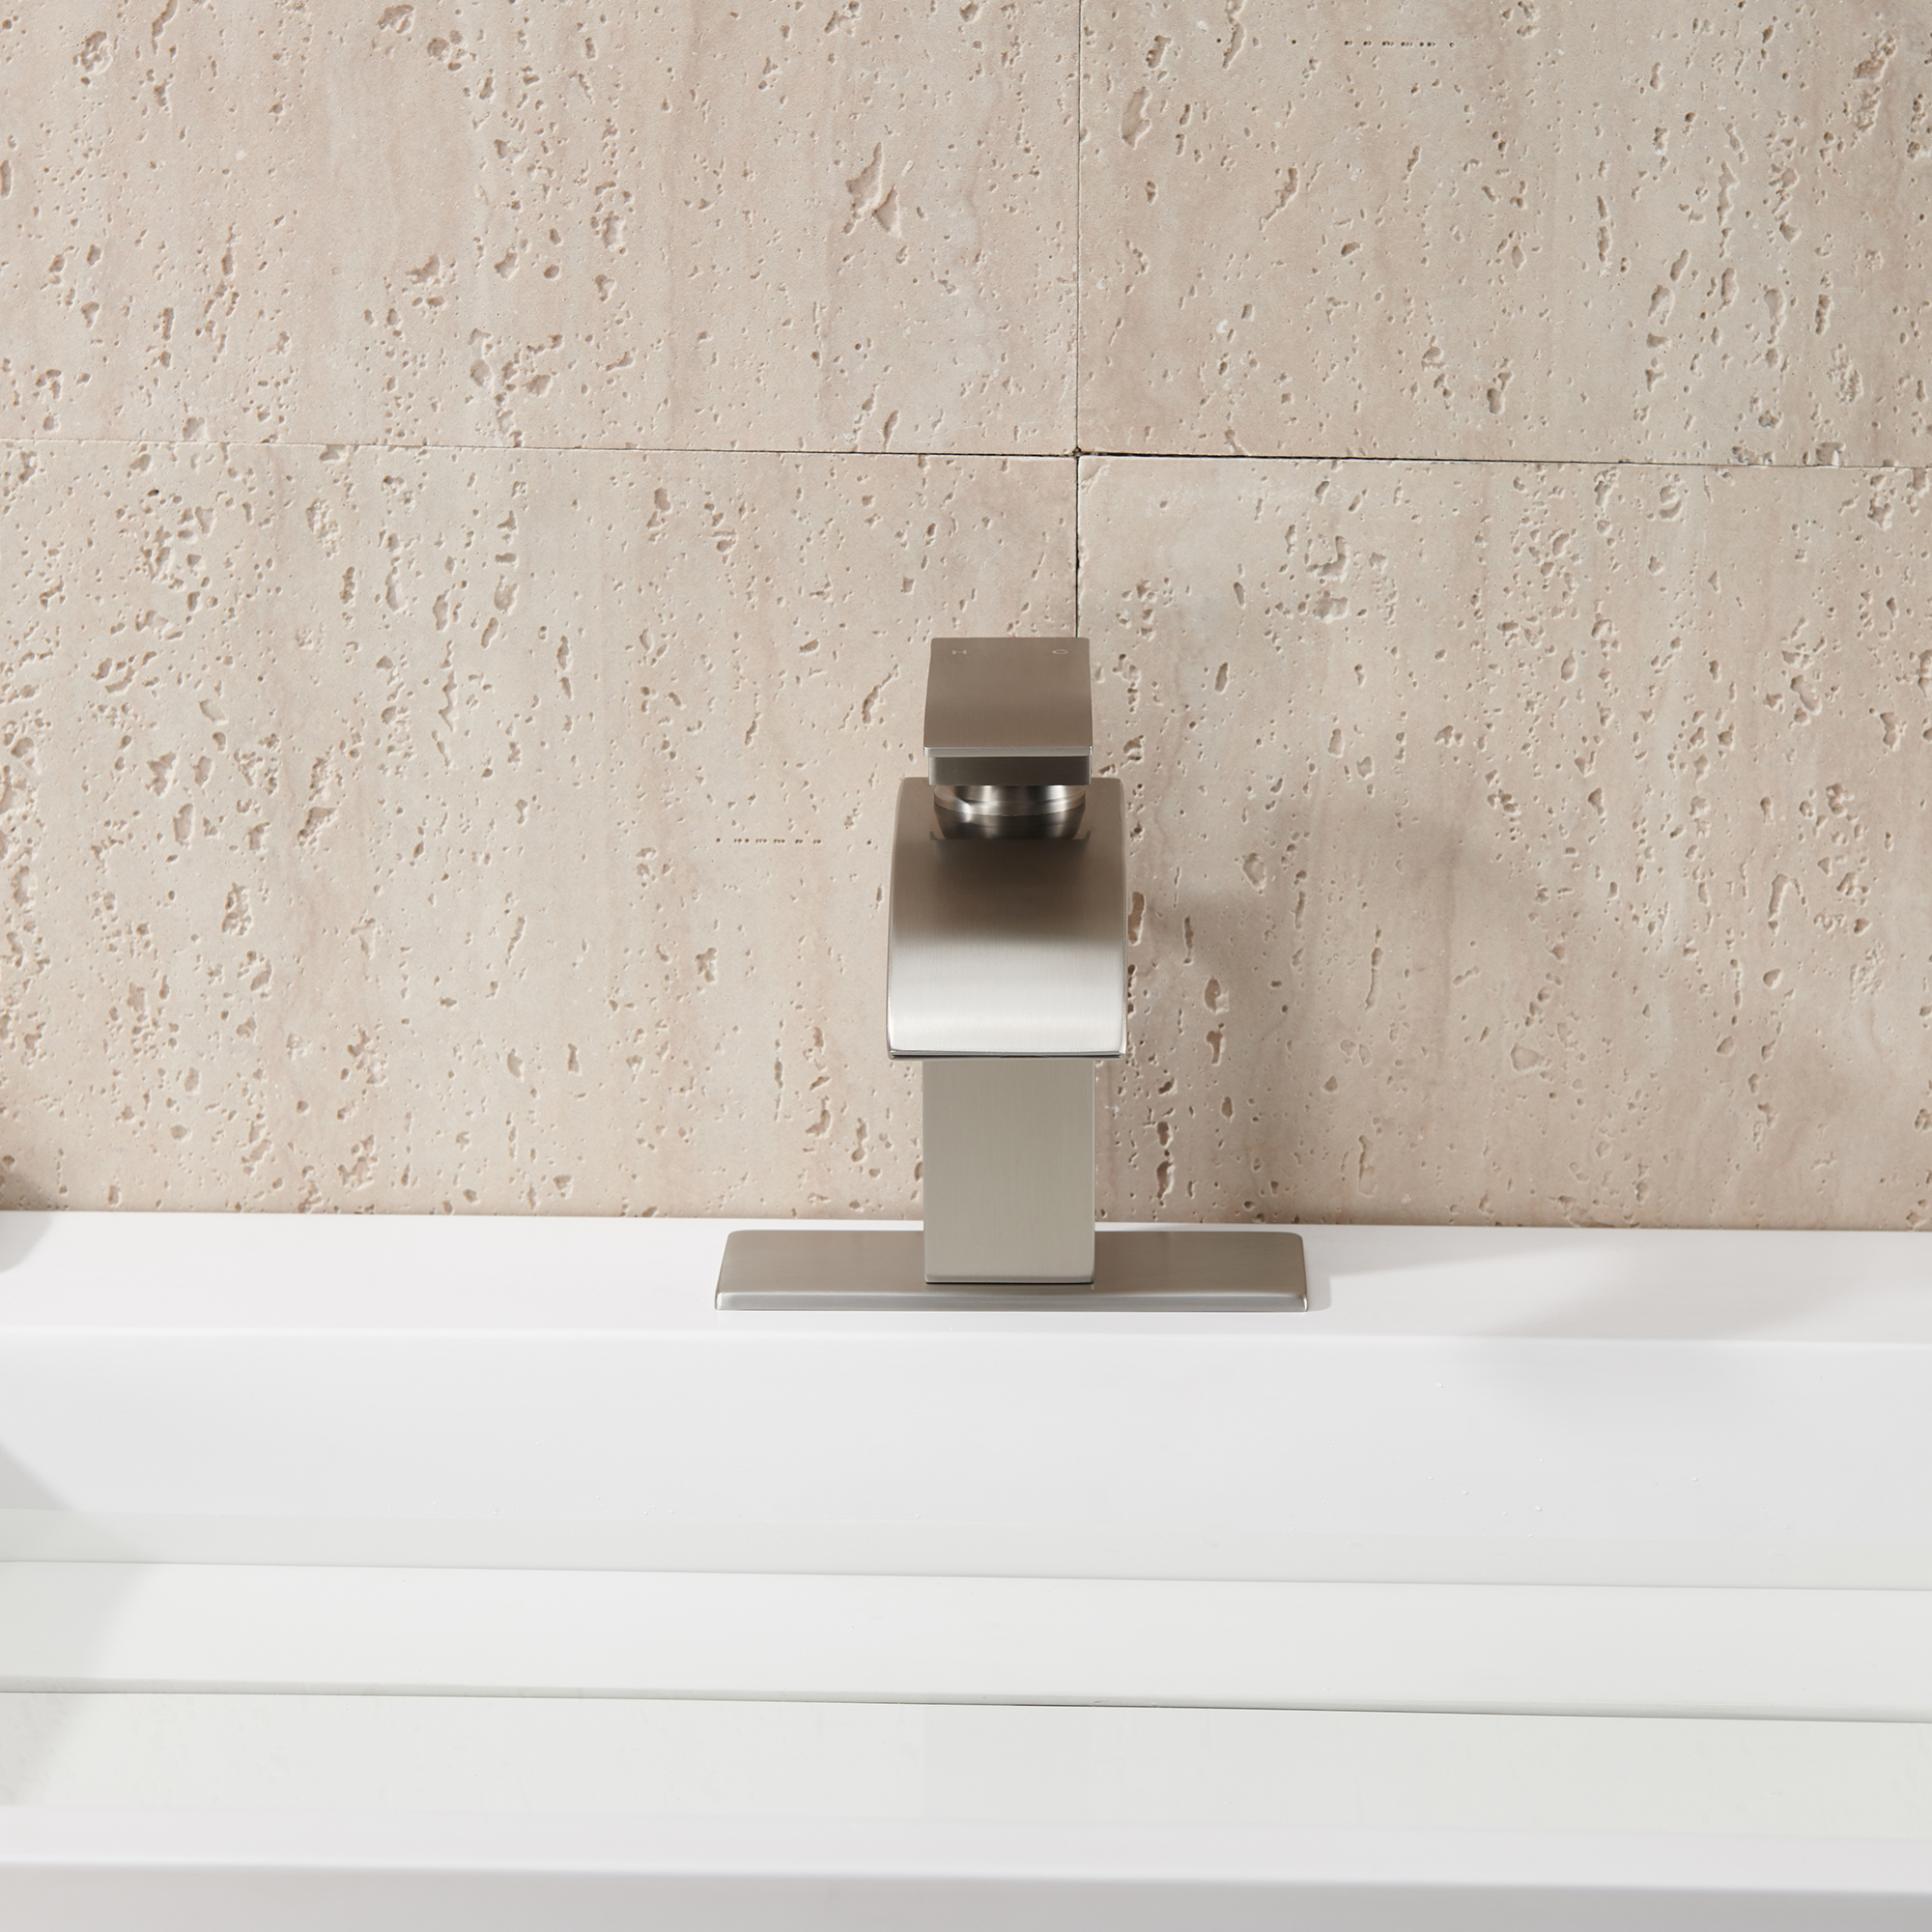 Mondawe Waterfall Spout Bathroom Faucet In Brushed Nickel Single Handle Bathroom Sink Faucet